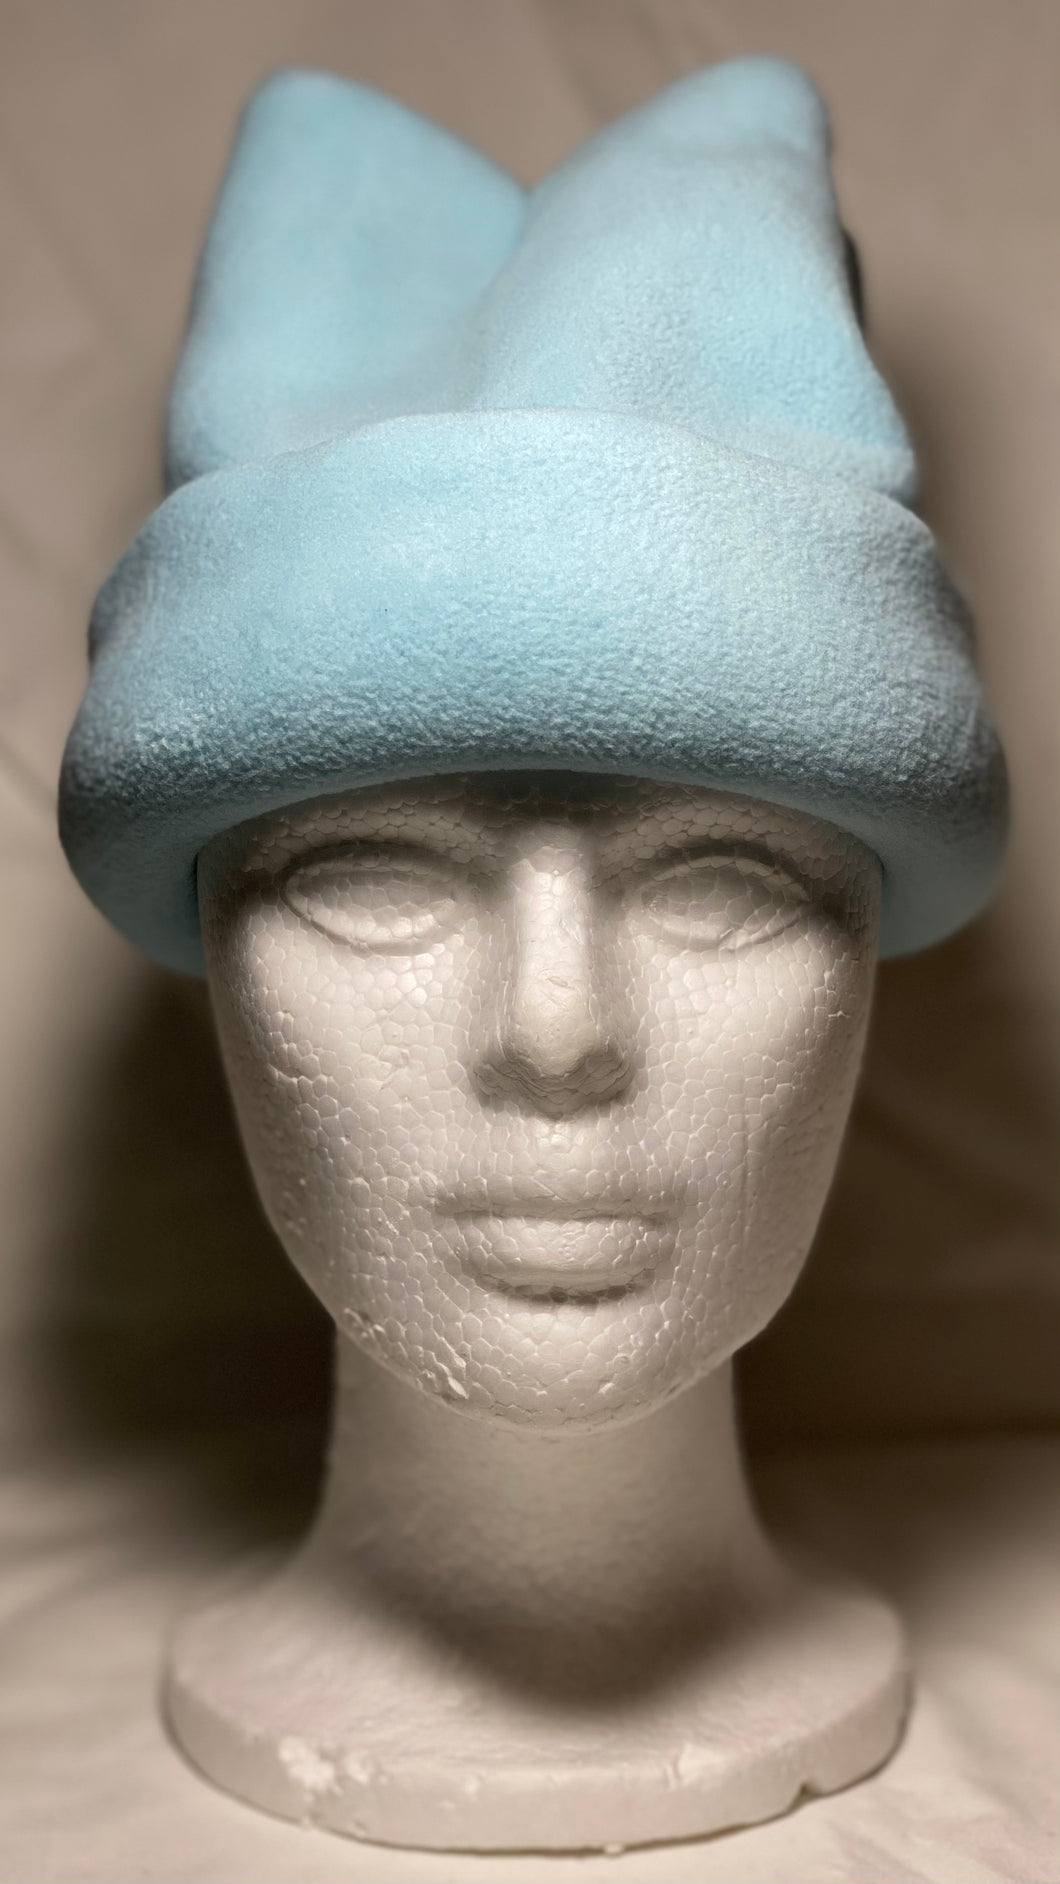 Baby Blue Fleece Hat